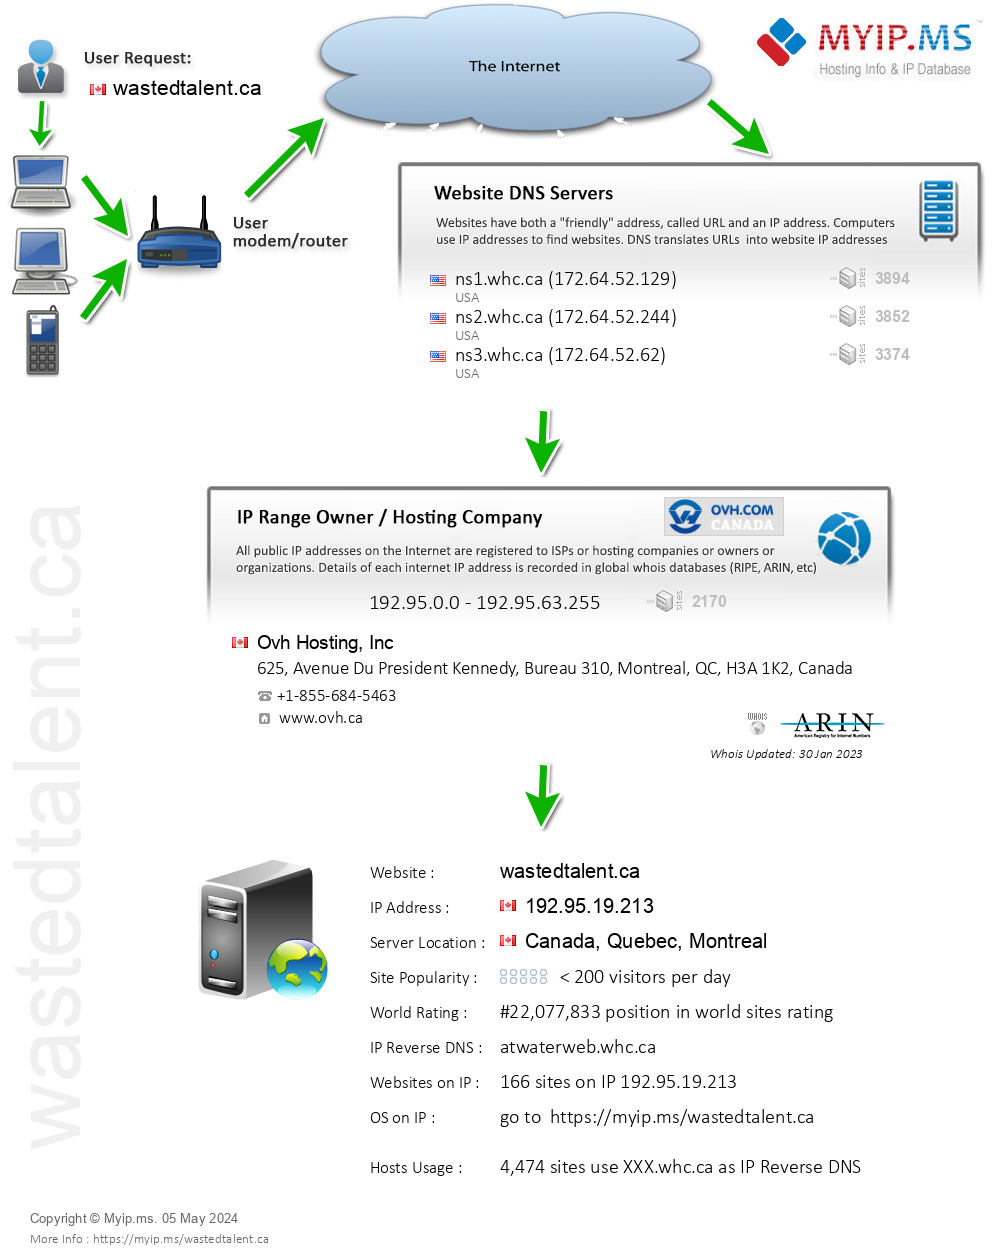 Wastedtalent.ca - Website Hosting Visual IP Diagram